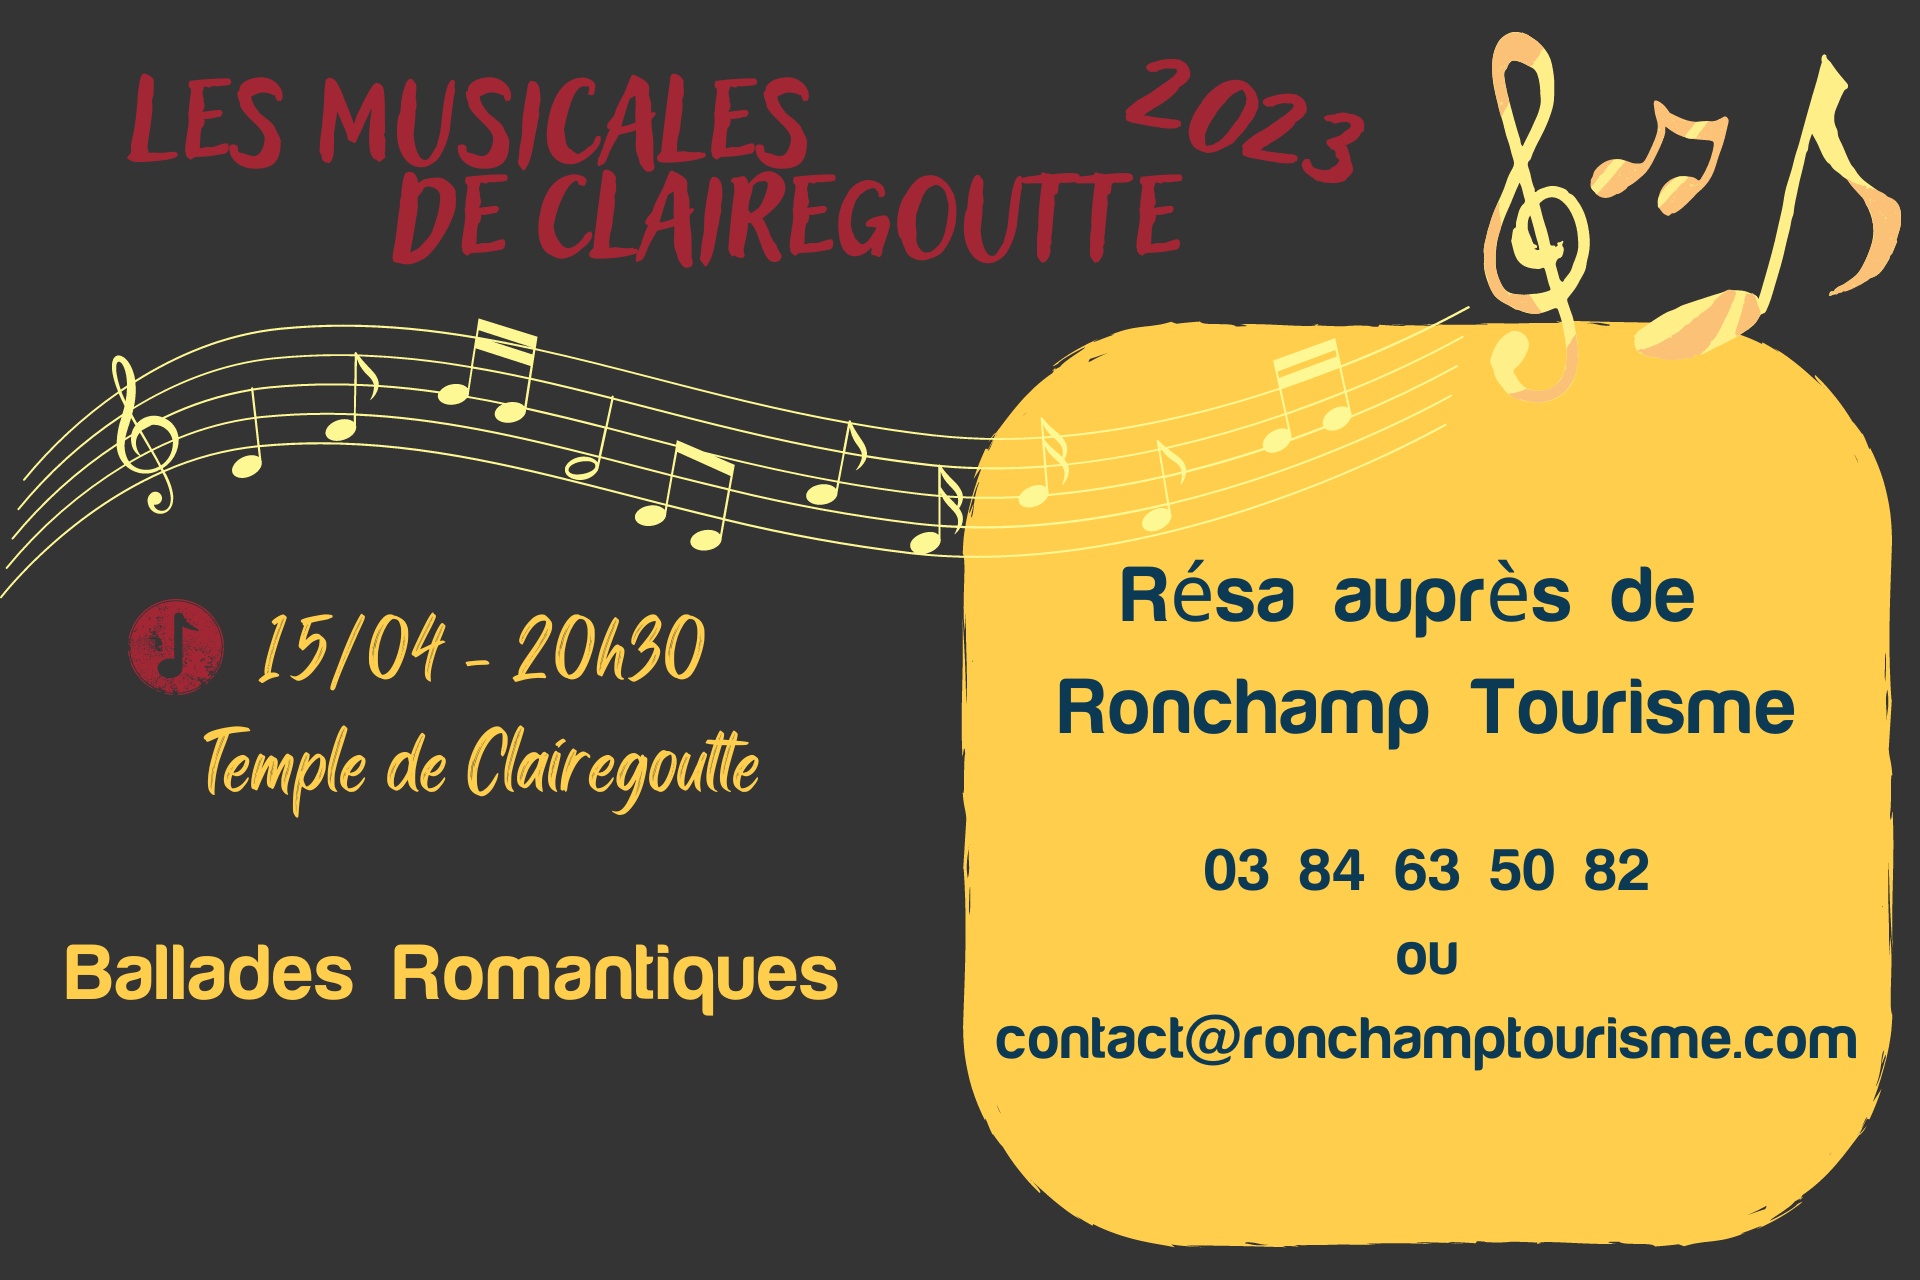 MUSICALES DE CLAIREGOUTTE 2023 - Concert du 15 avril